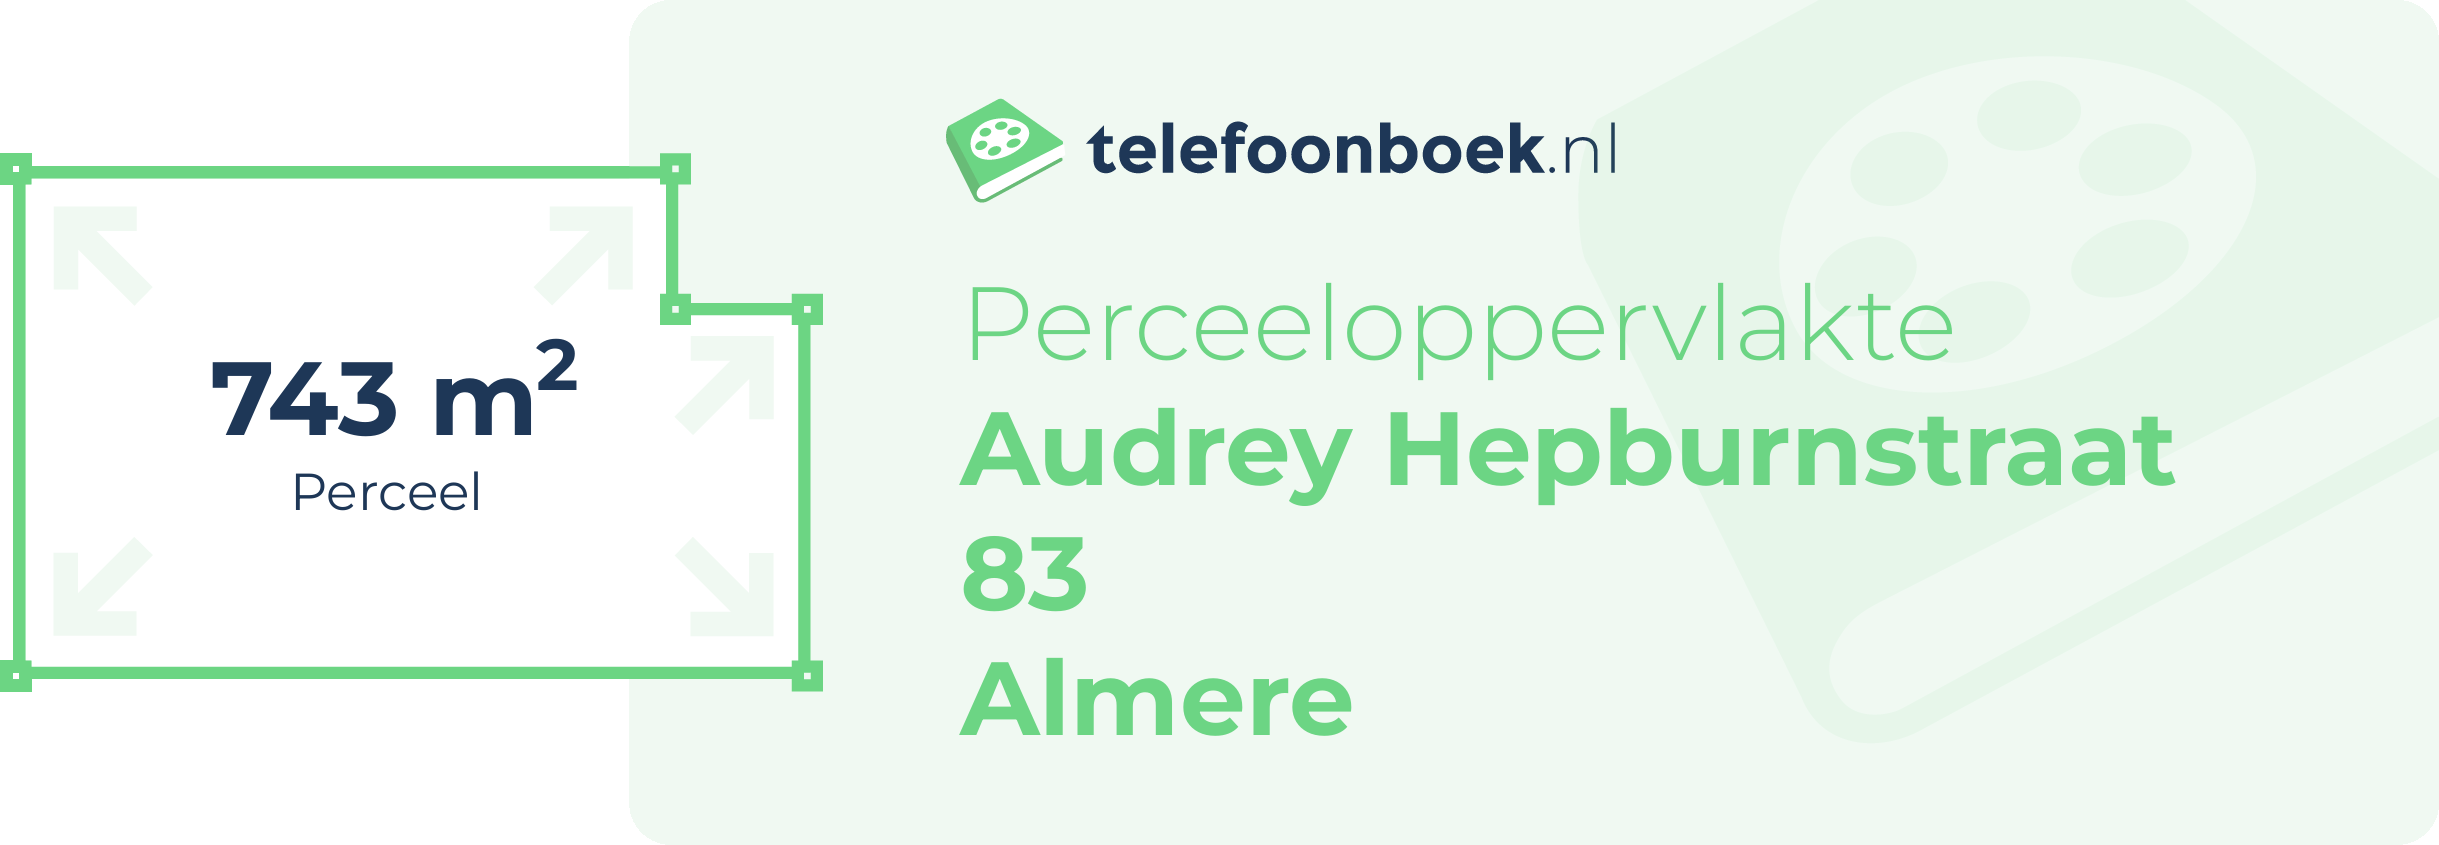 Perceeloppervlakte Audrey Hepburnstraat 83 Almere